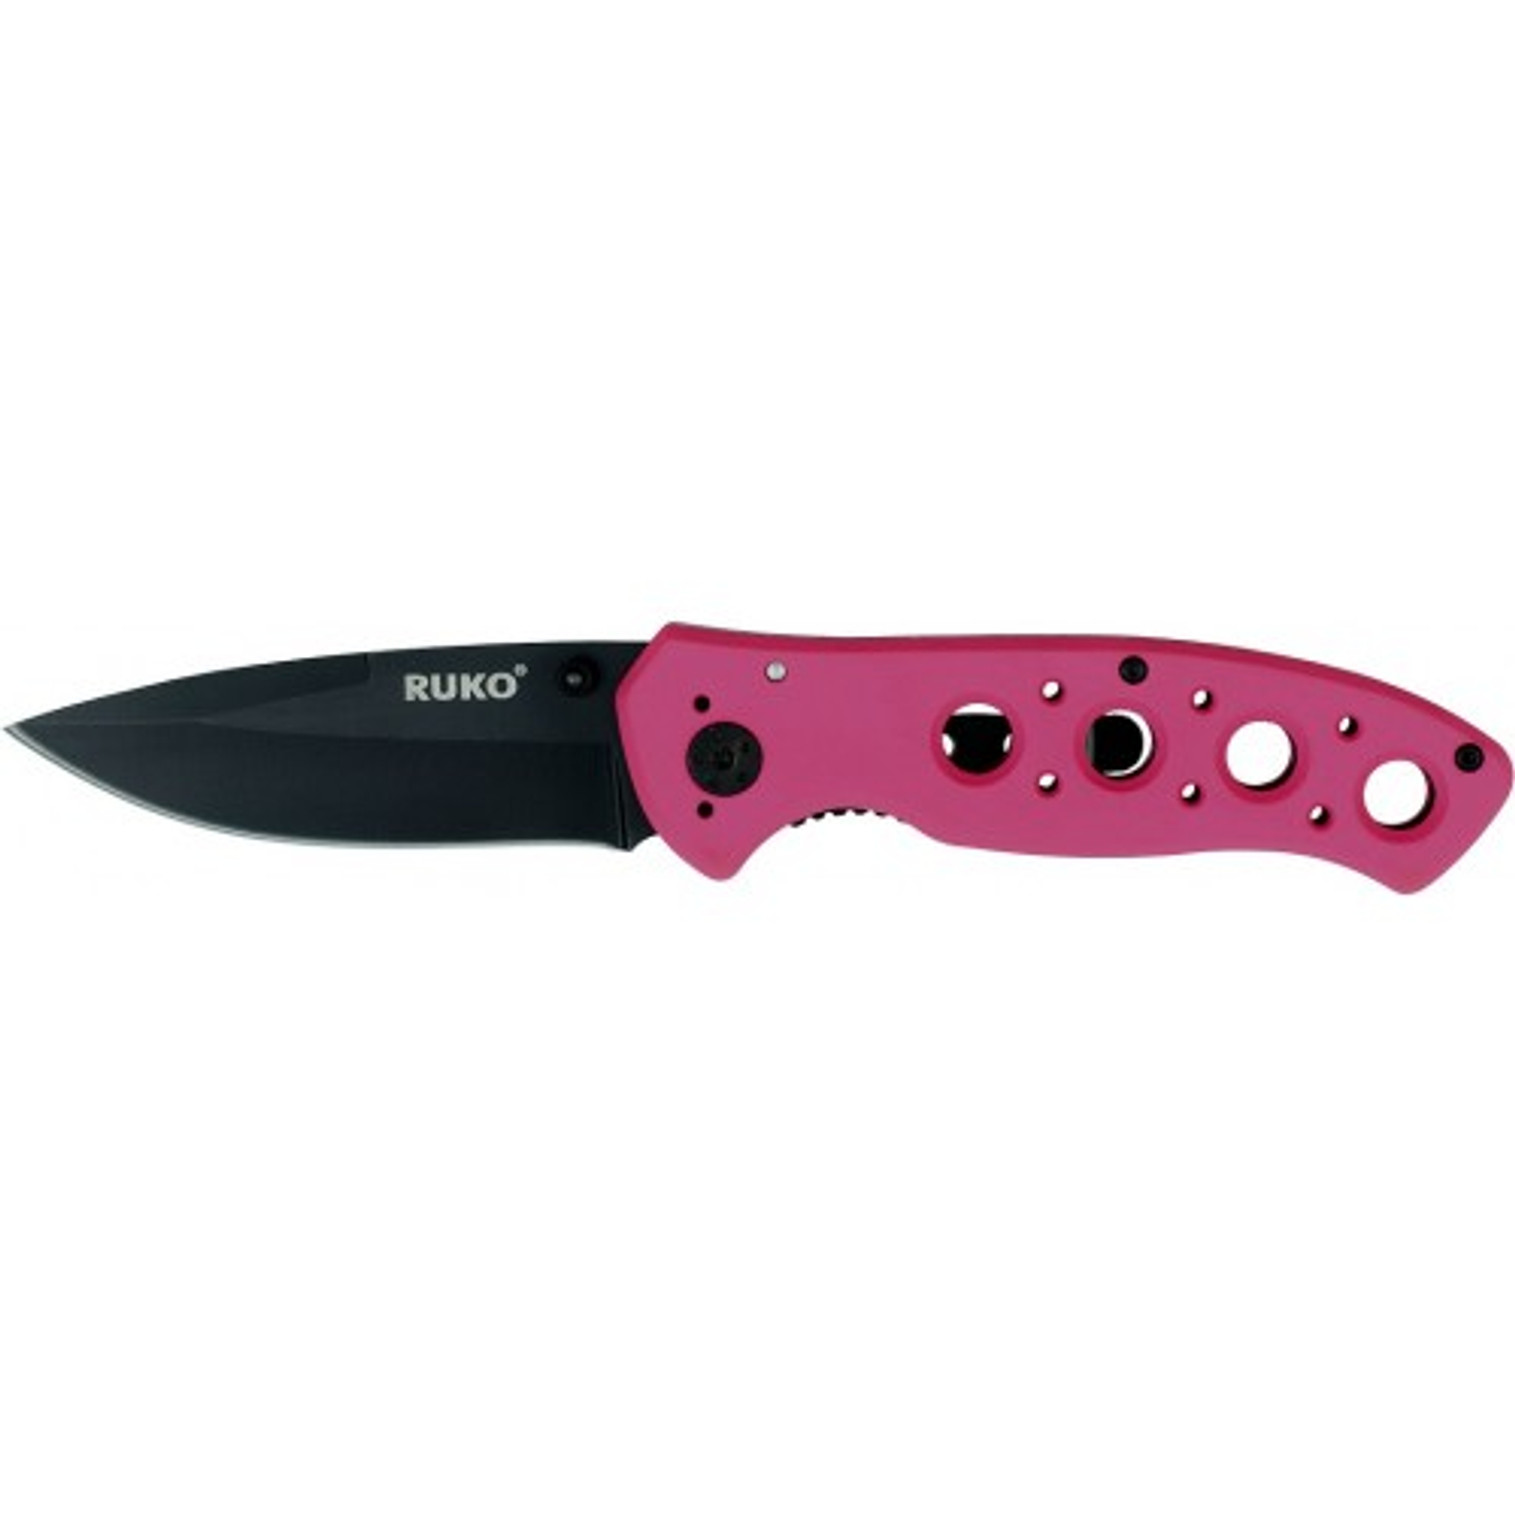 RUKO RUK0075PK, 440A, 3-1/4" Folding Blade Knife, Pink Handle, boxed